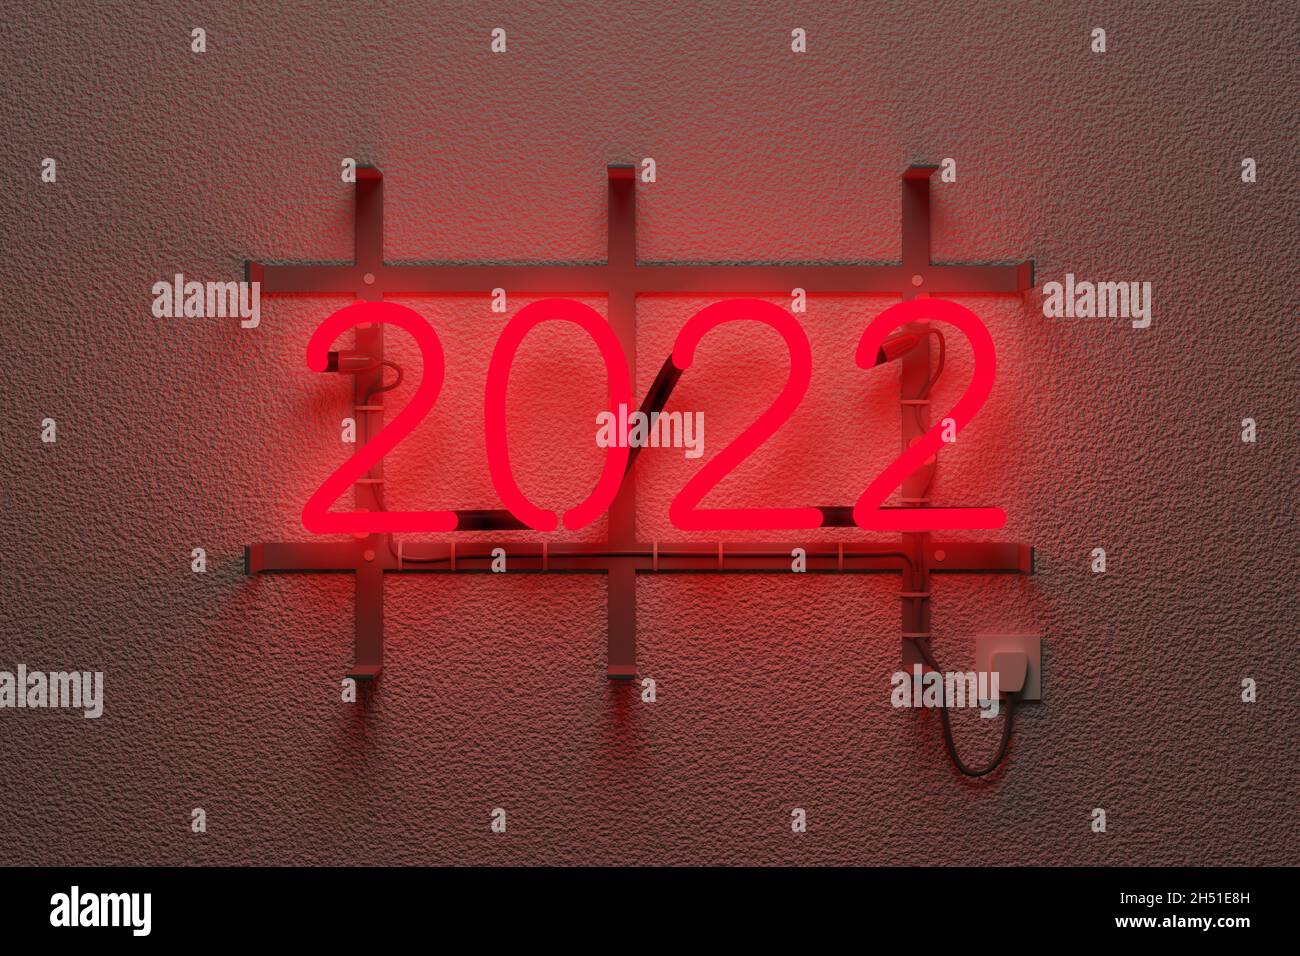 Signo de neón realista con la leyenda 2022. Concepto de año nuevo. ilustración 3d. Foto de stock